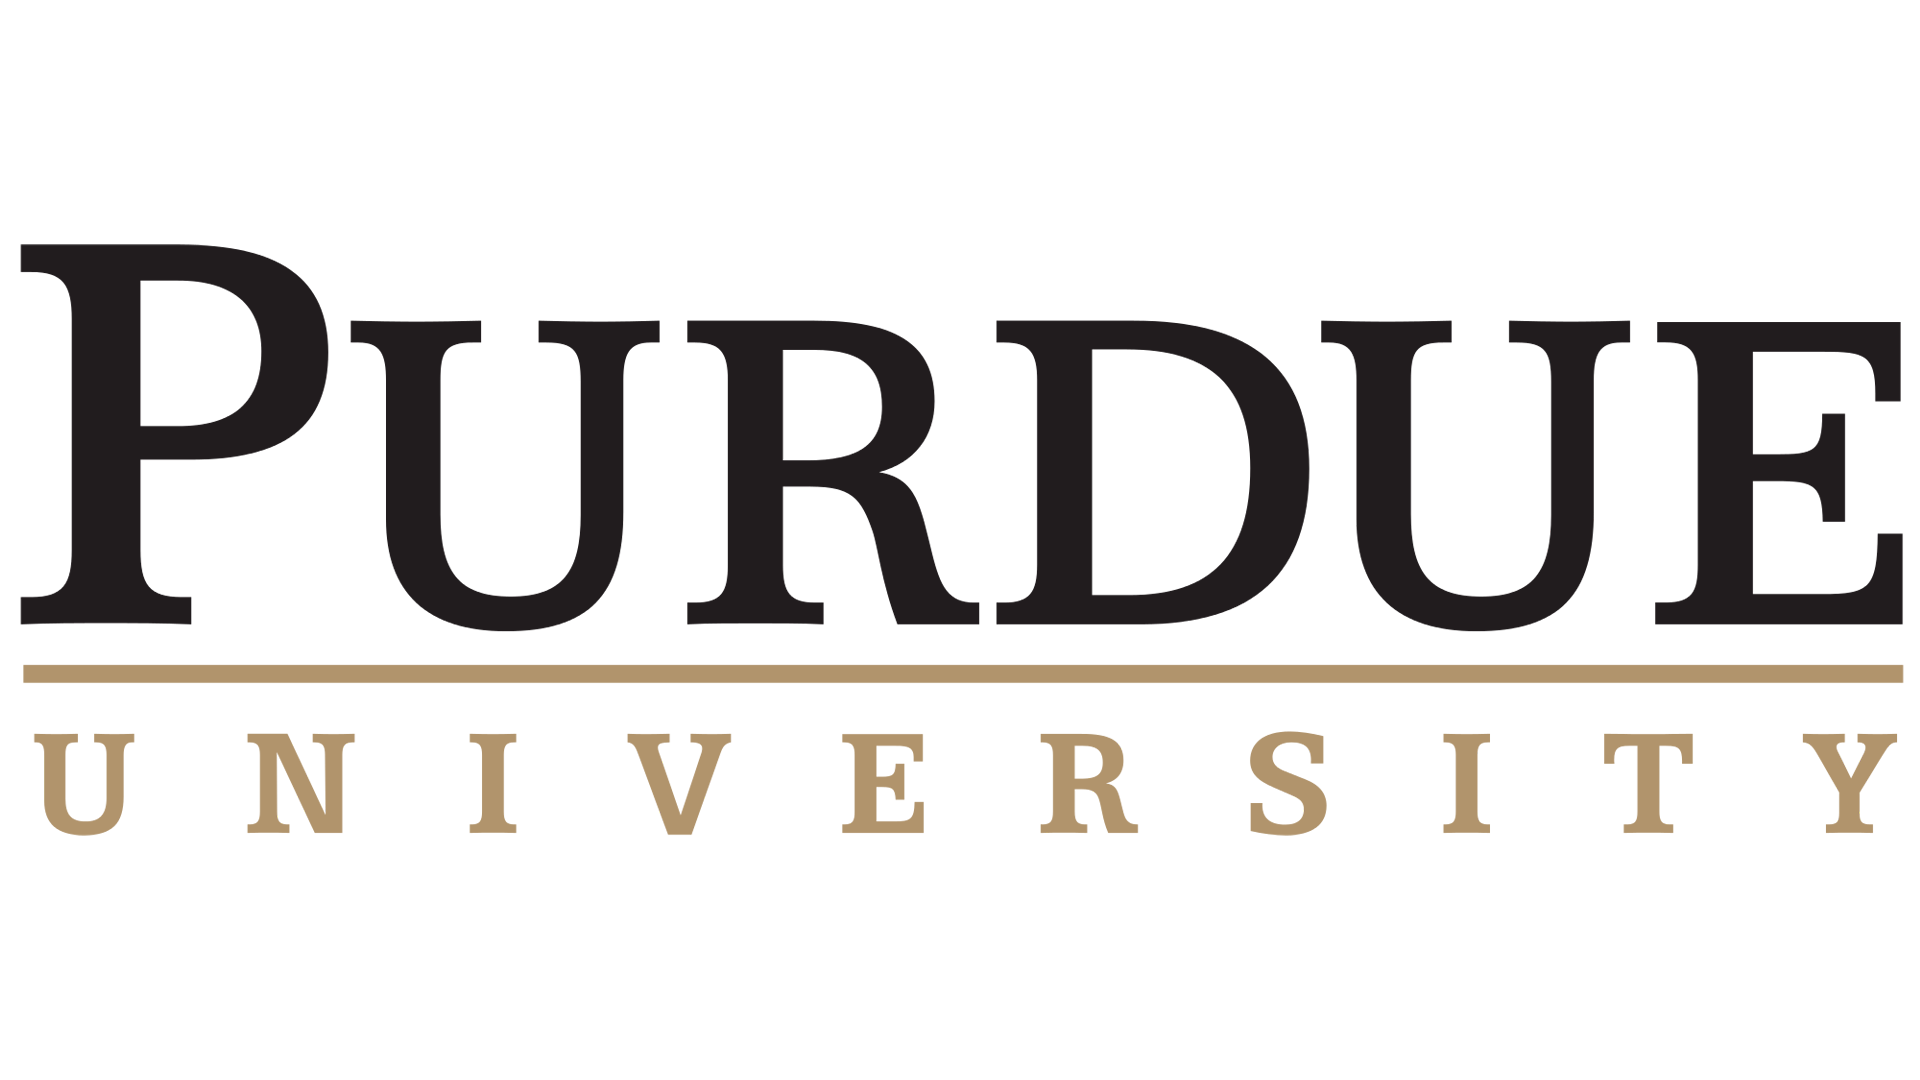 Purdue University Transparent Logo PNG